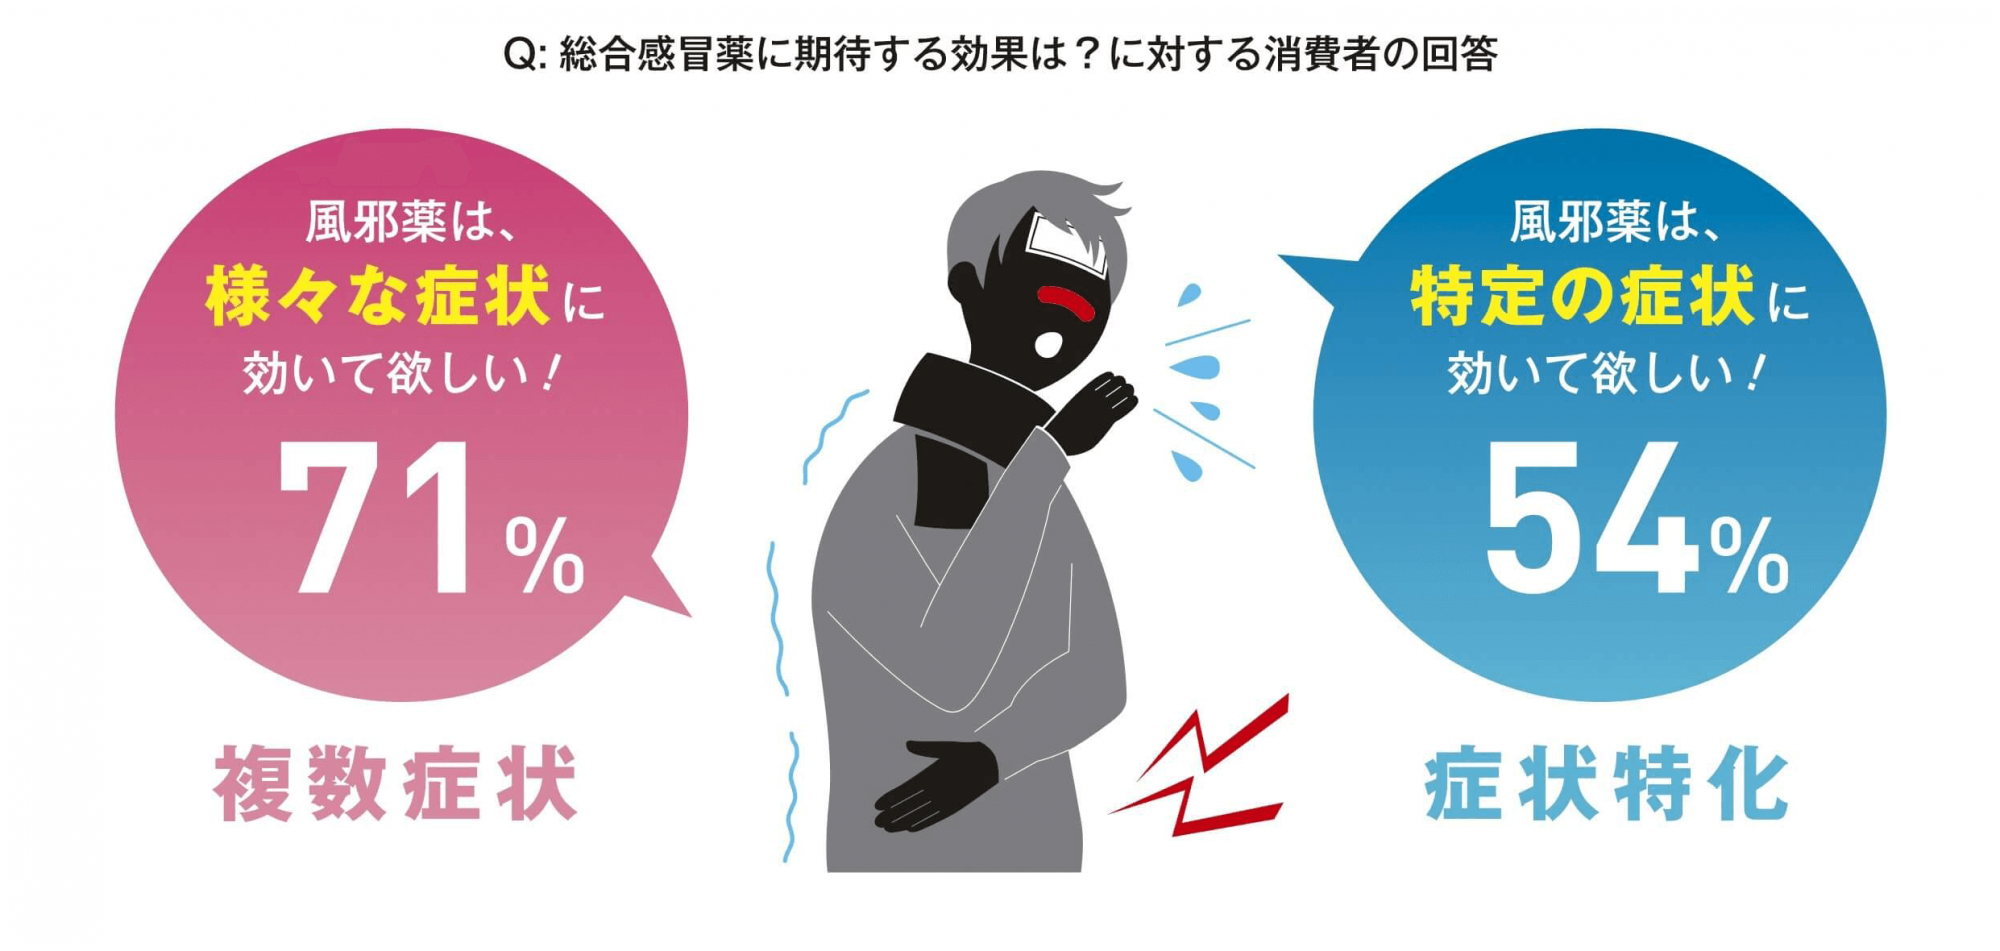 「Q：総合感冒に期待する効果は？に対する消費者の回答」の画像